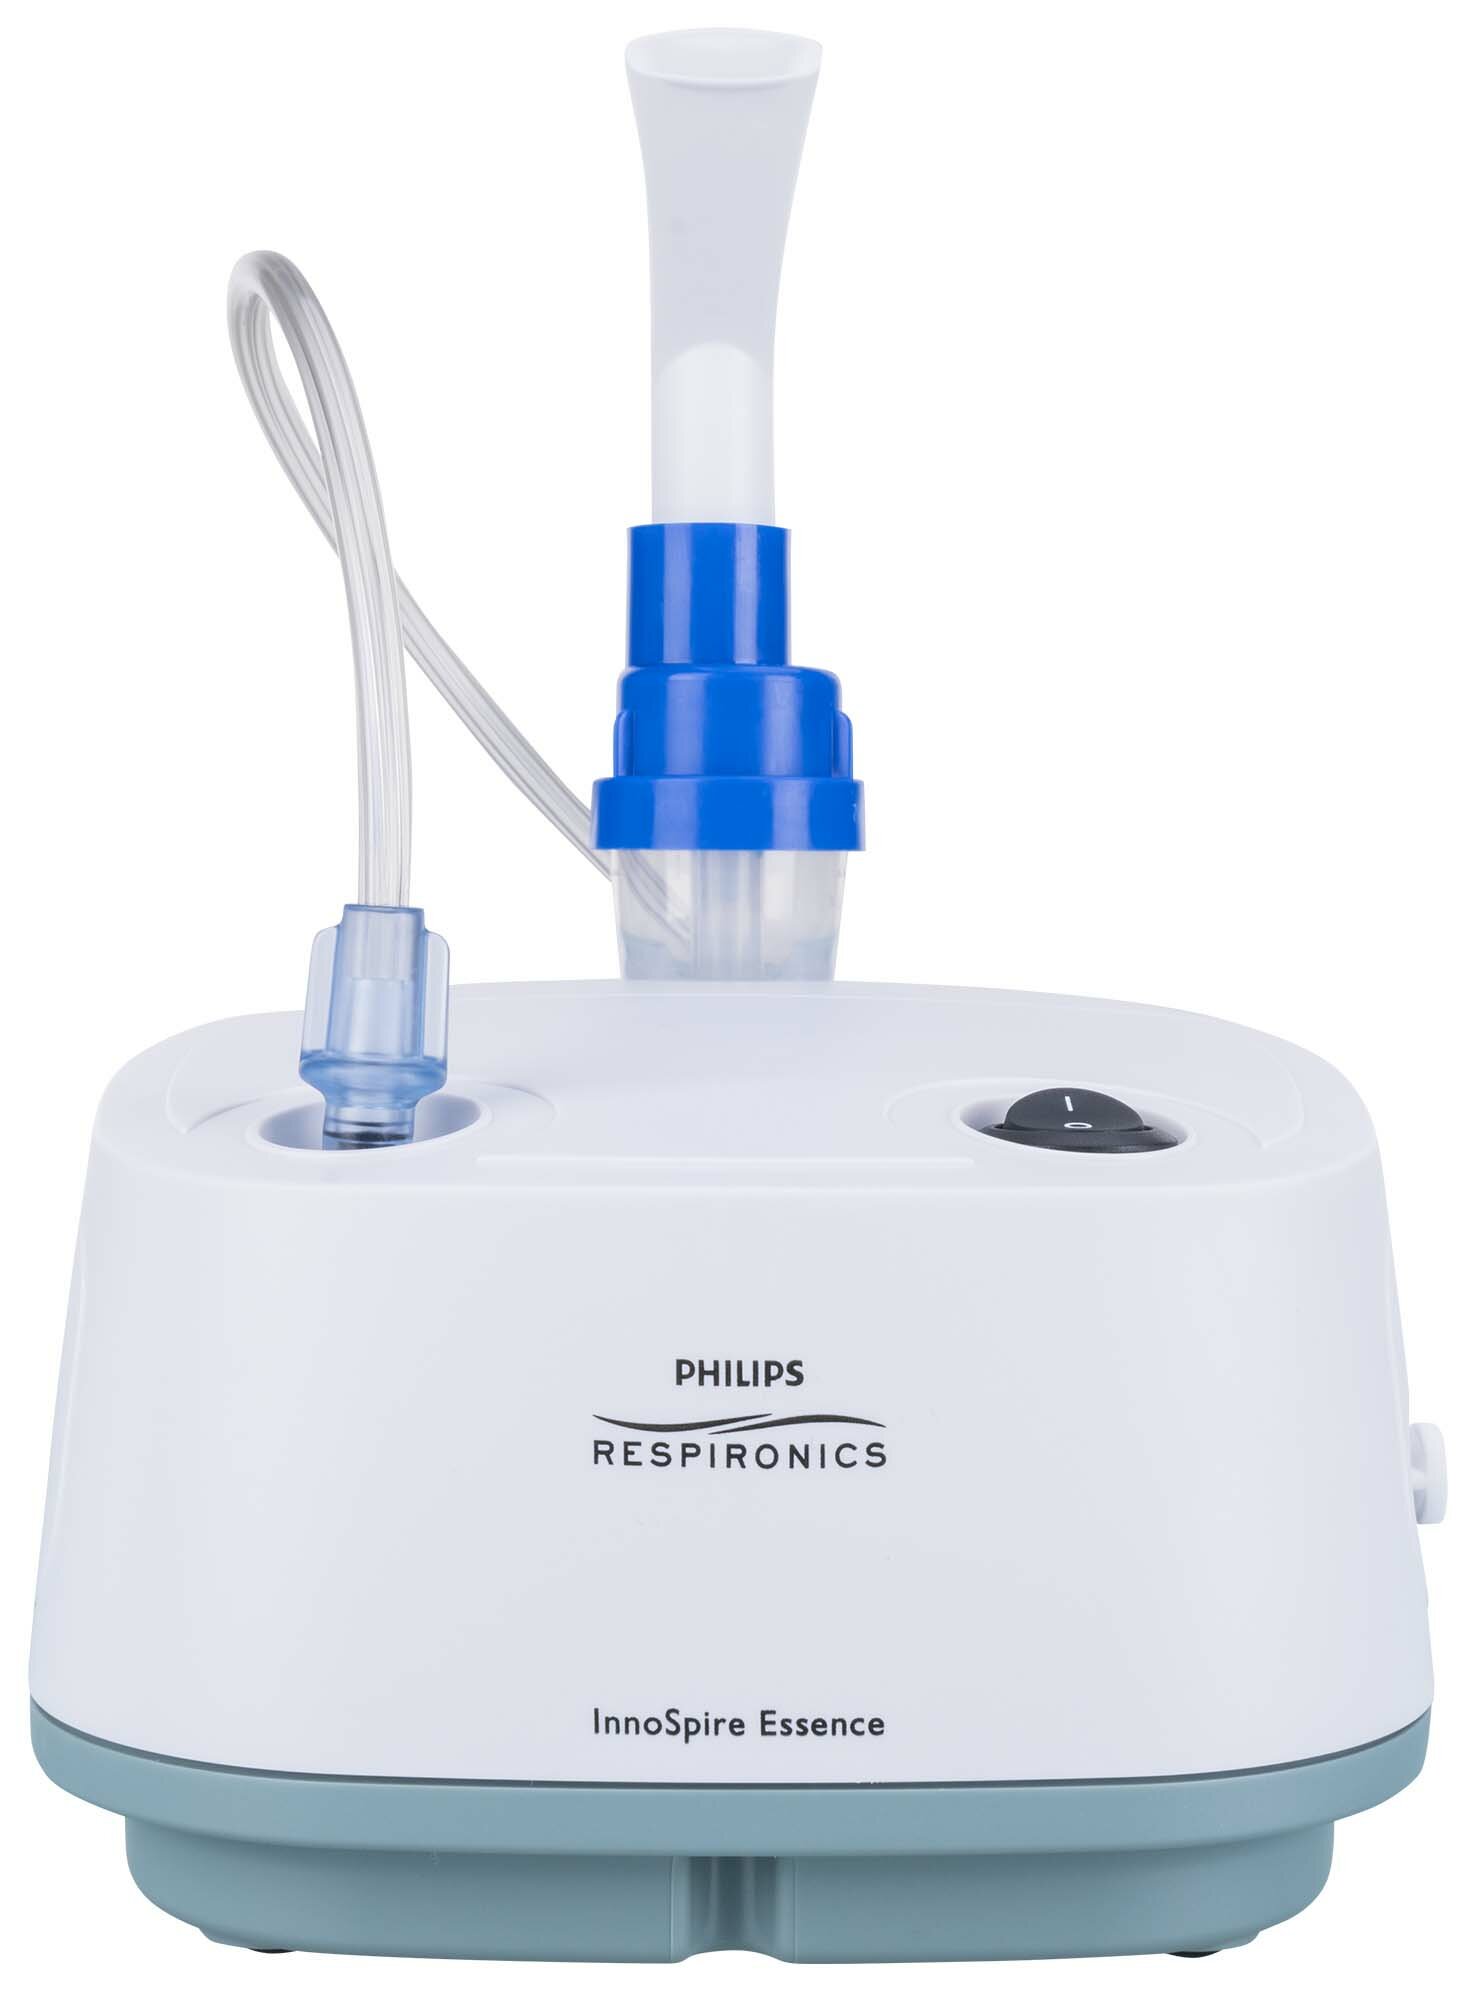 PHILIPS Respironics Essence 0.3 ml/min Inhalator nebulizator pneumatyczny -  niskie ceny i opinie w Media Expert